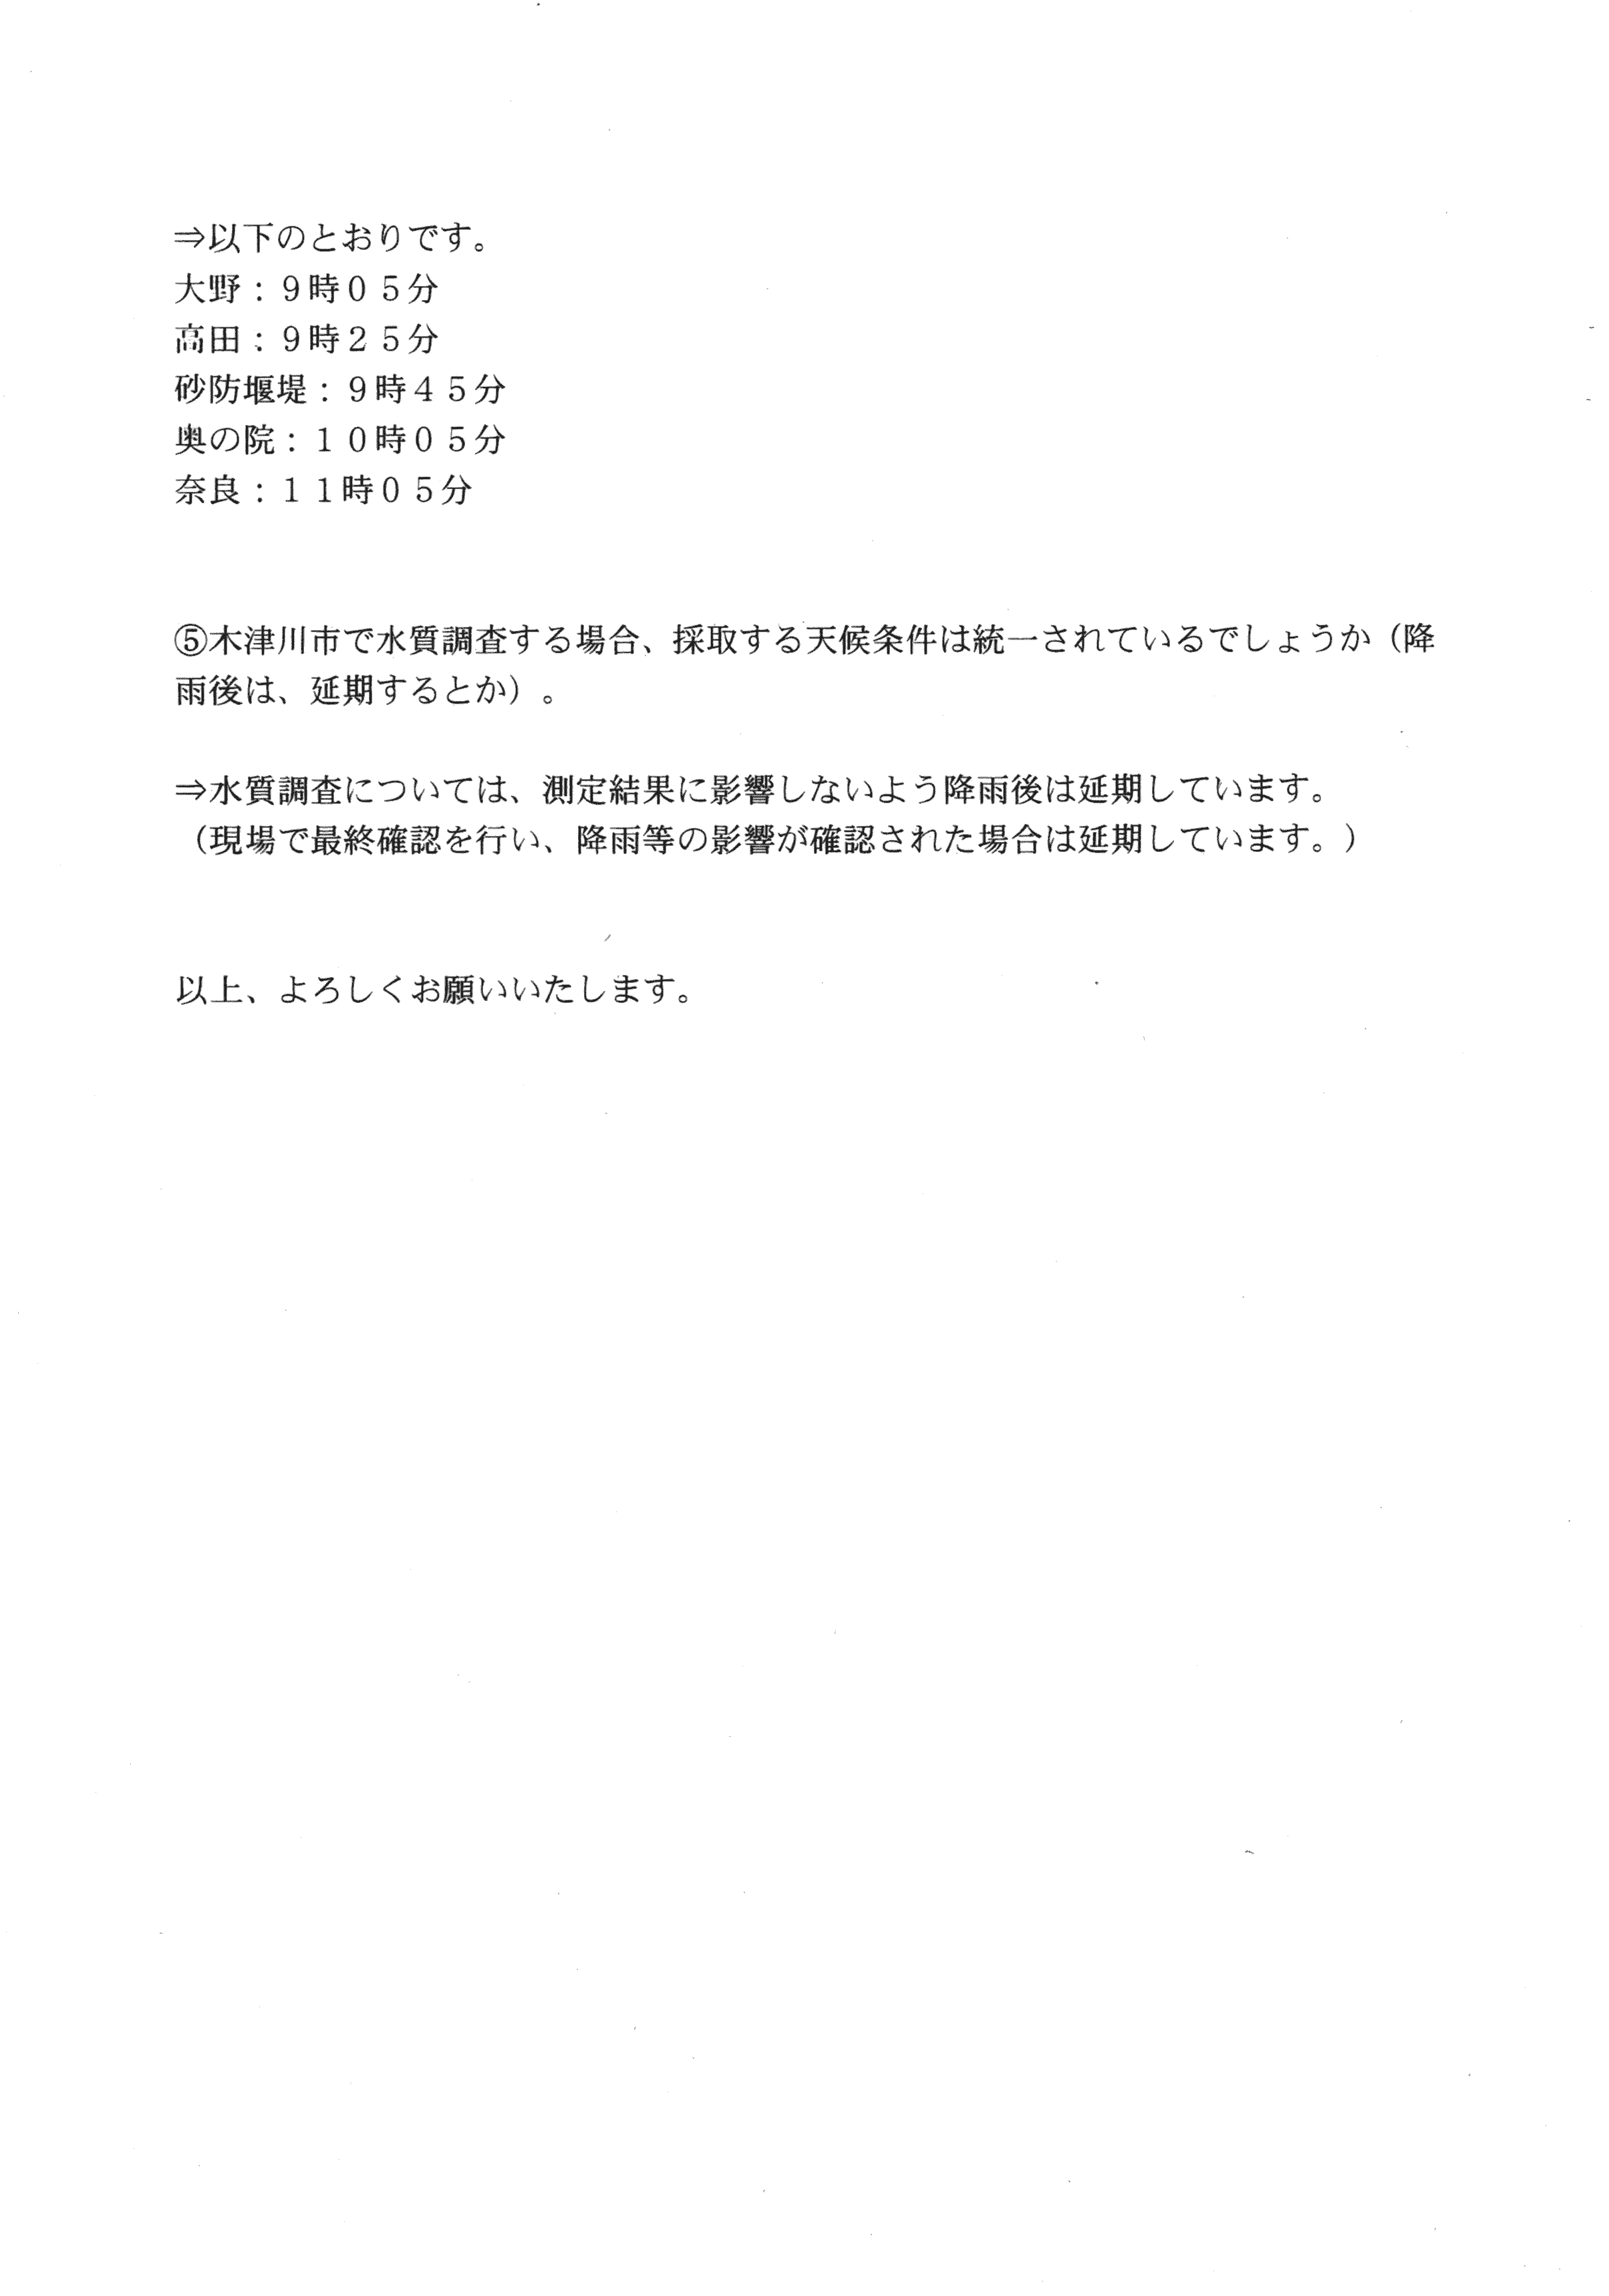 平成30年1月23日-赤田川水質調査関係資料の提供について-02